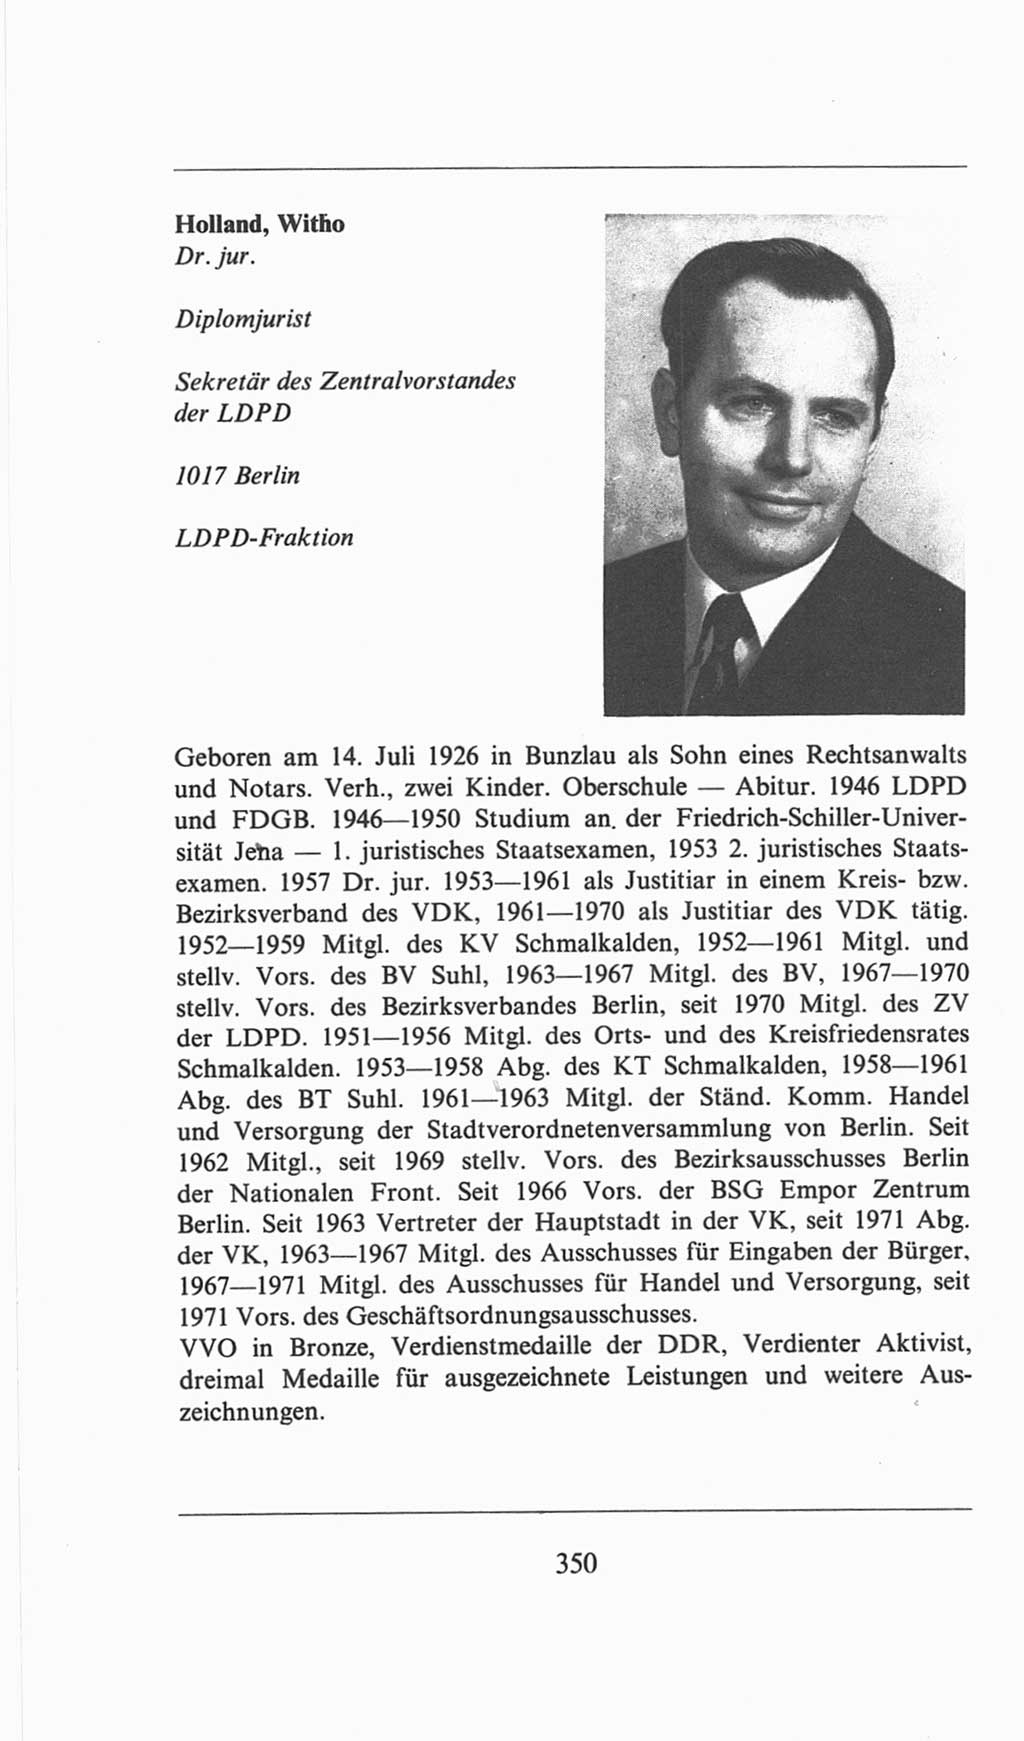 Volkskammer (VK) der Deutschen Demokratischen Republik (DDR), 6. Wahlperiode 1971-1976, Seite 350 (VK. DDR 6. WP. 1971-1976, S. 350)